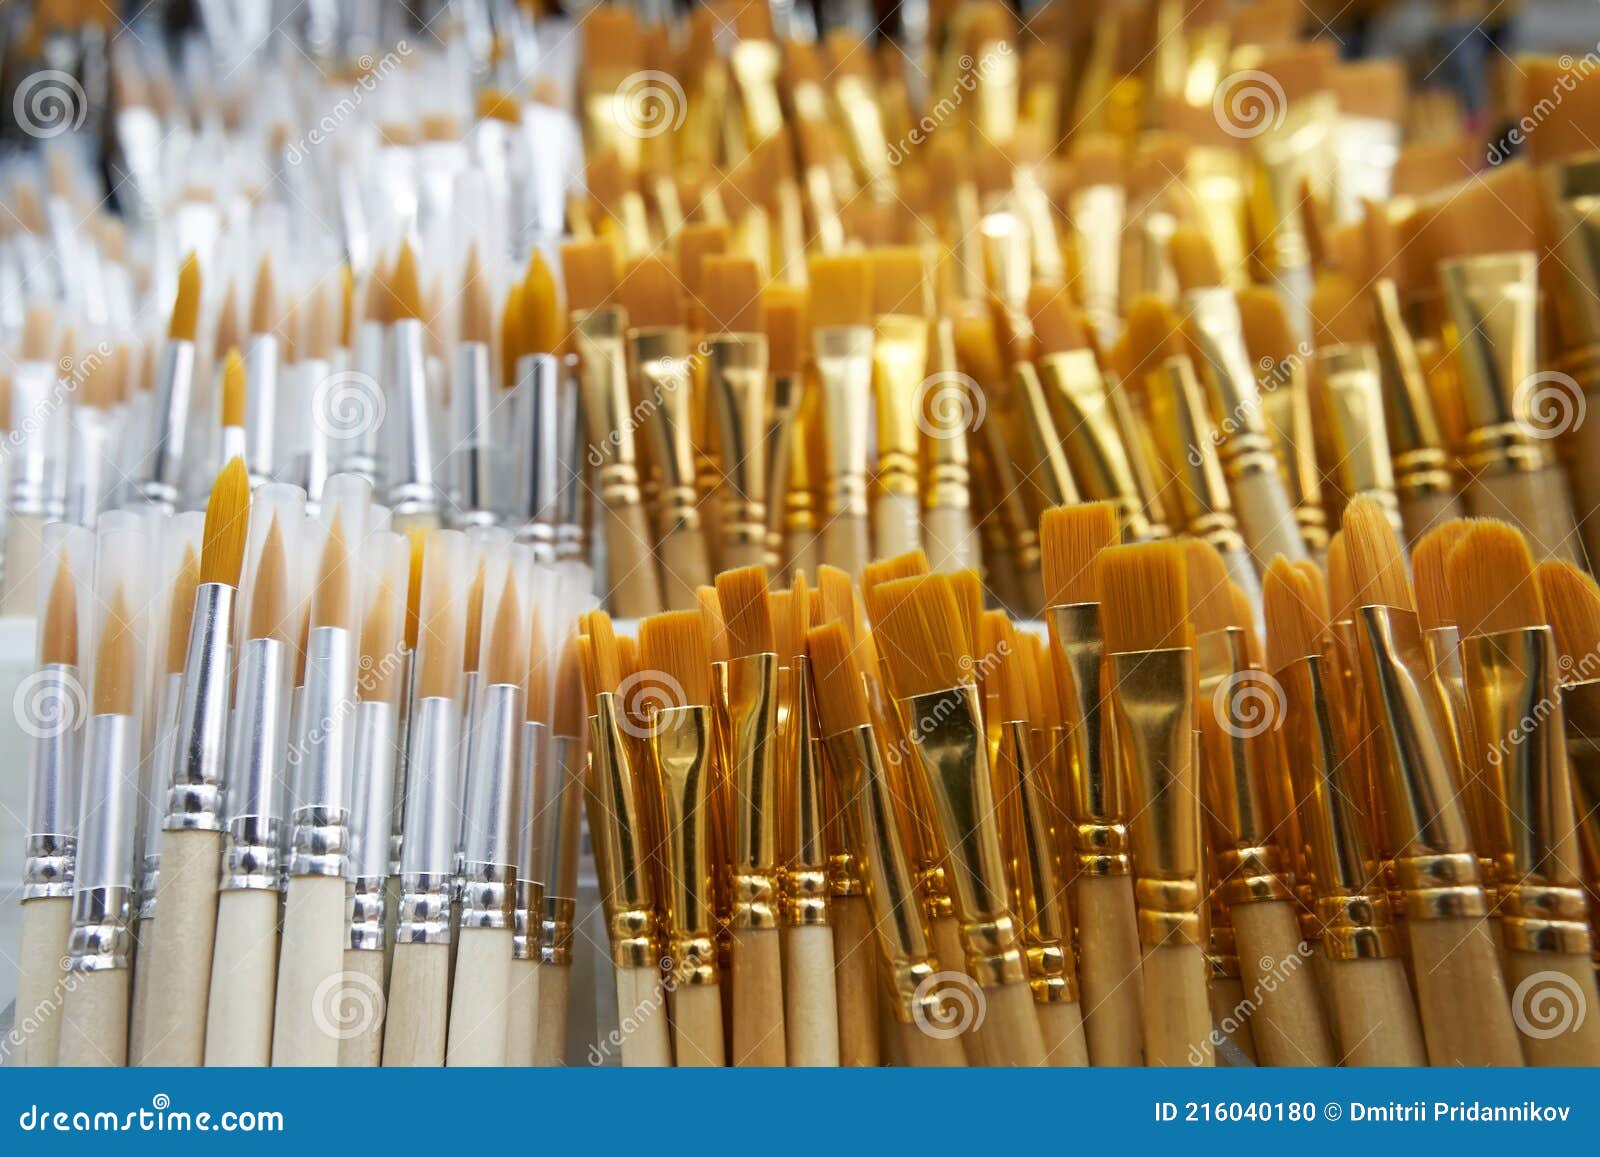 Venta de pinceles para pintar. Stock Photo